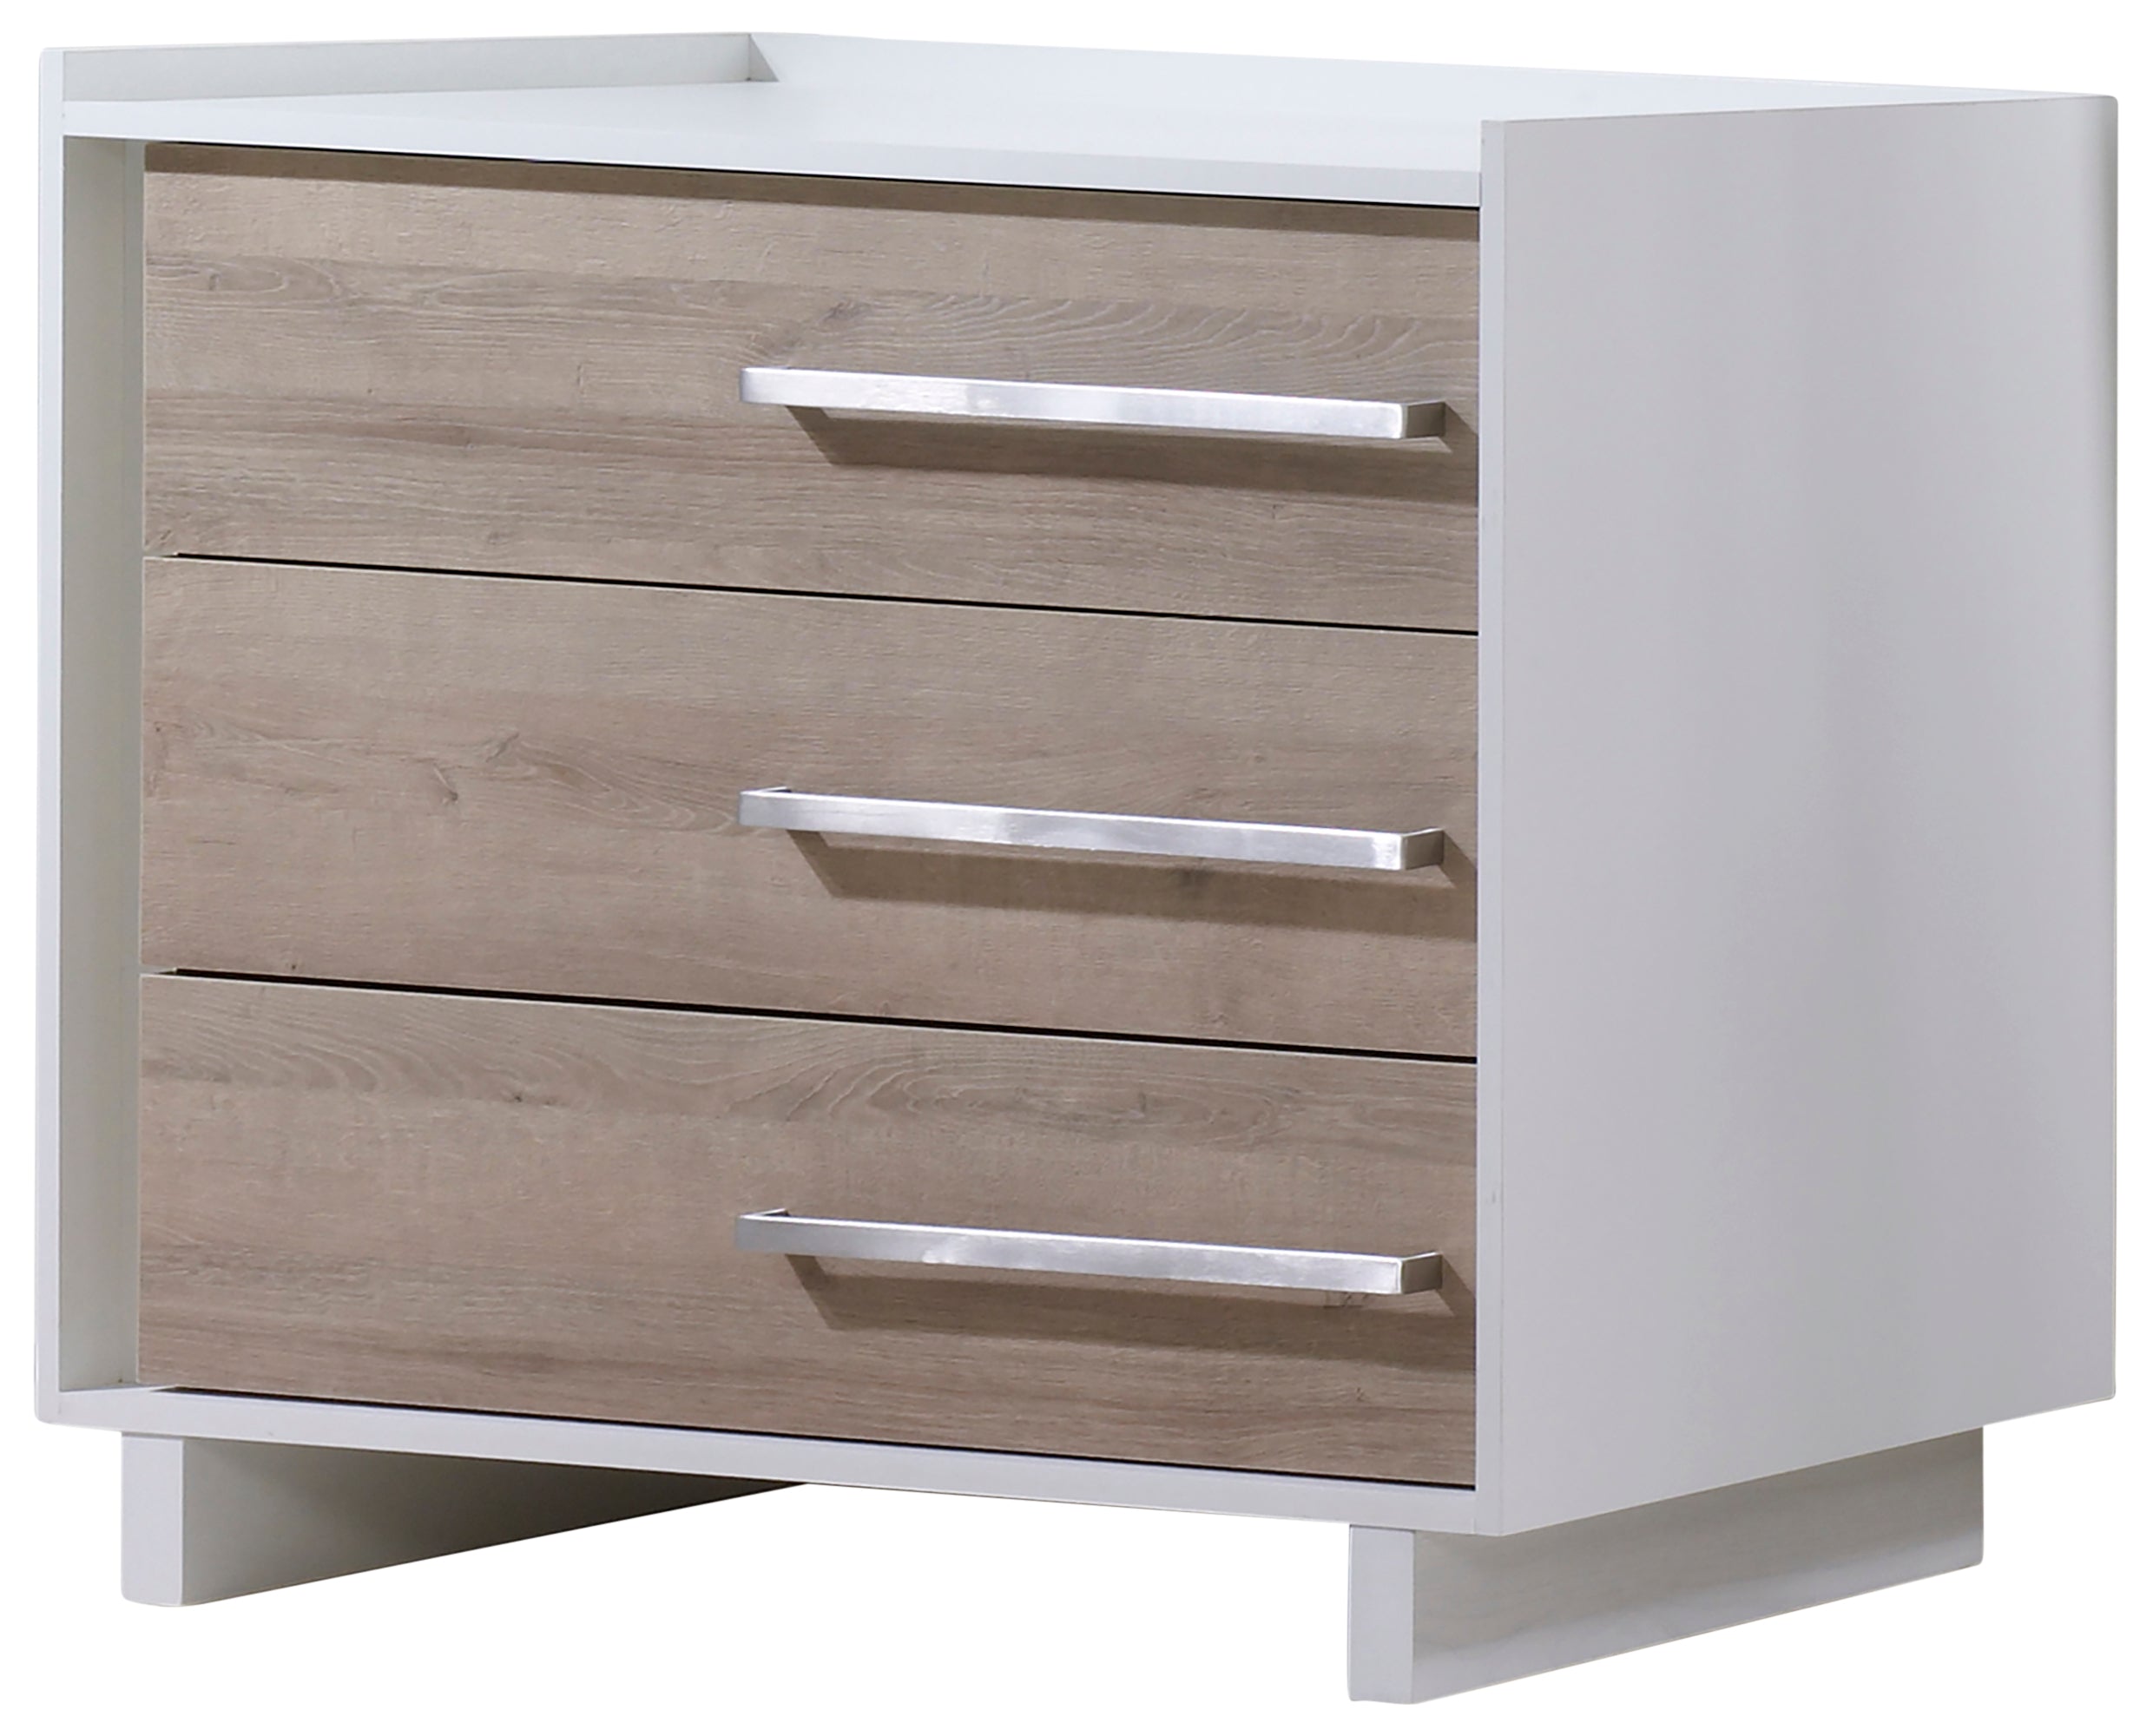 White Laminate &amp; Natural Laminate with White Wood | Urban Crib &amp; Dresser Set | Valley Ridge Furniture